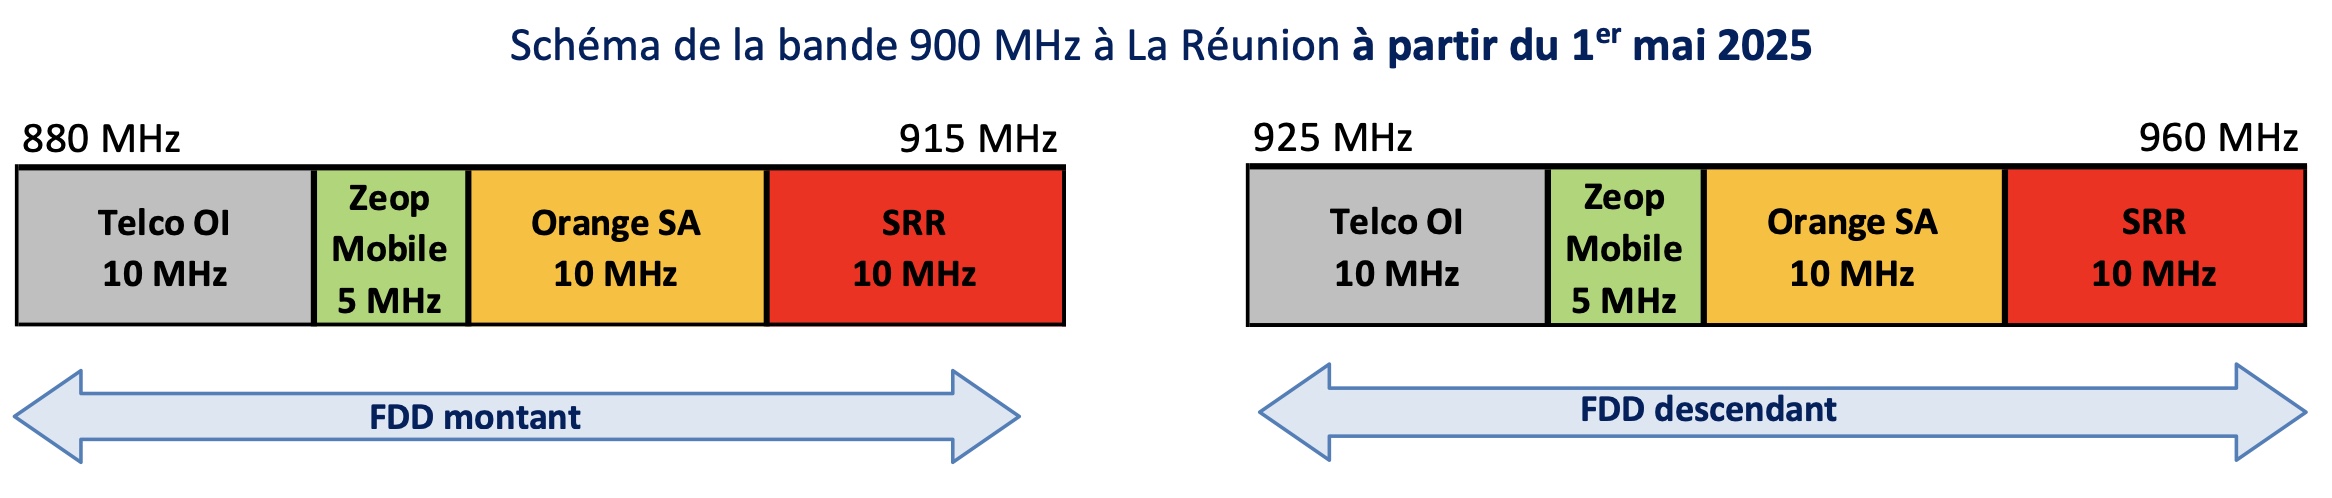 L’Arcep délivre aux lauréats les autorisations d’utilisation de fréquences dans la bande 900 MHz à La Réunion